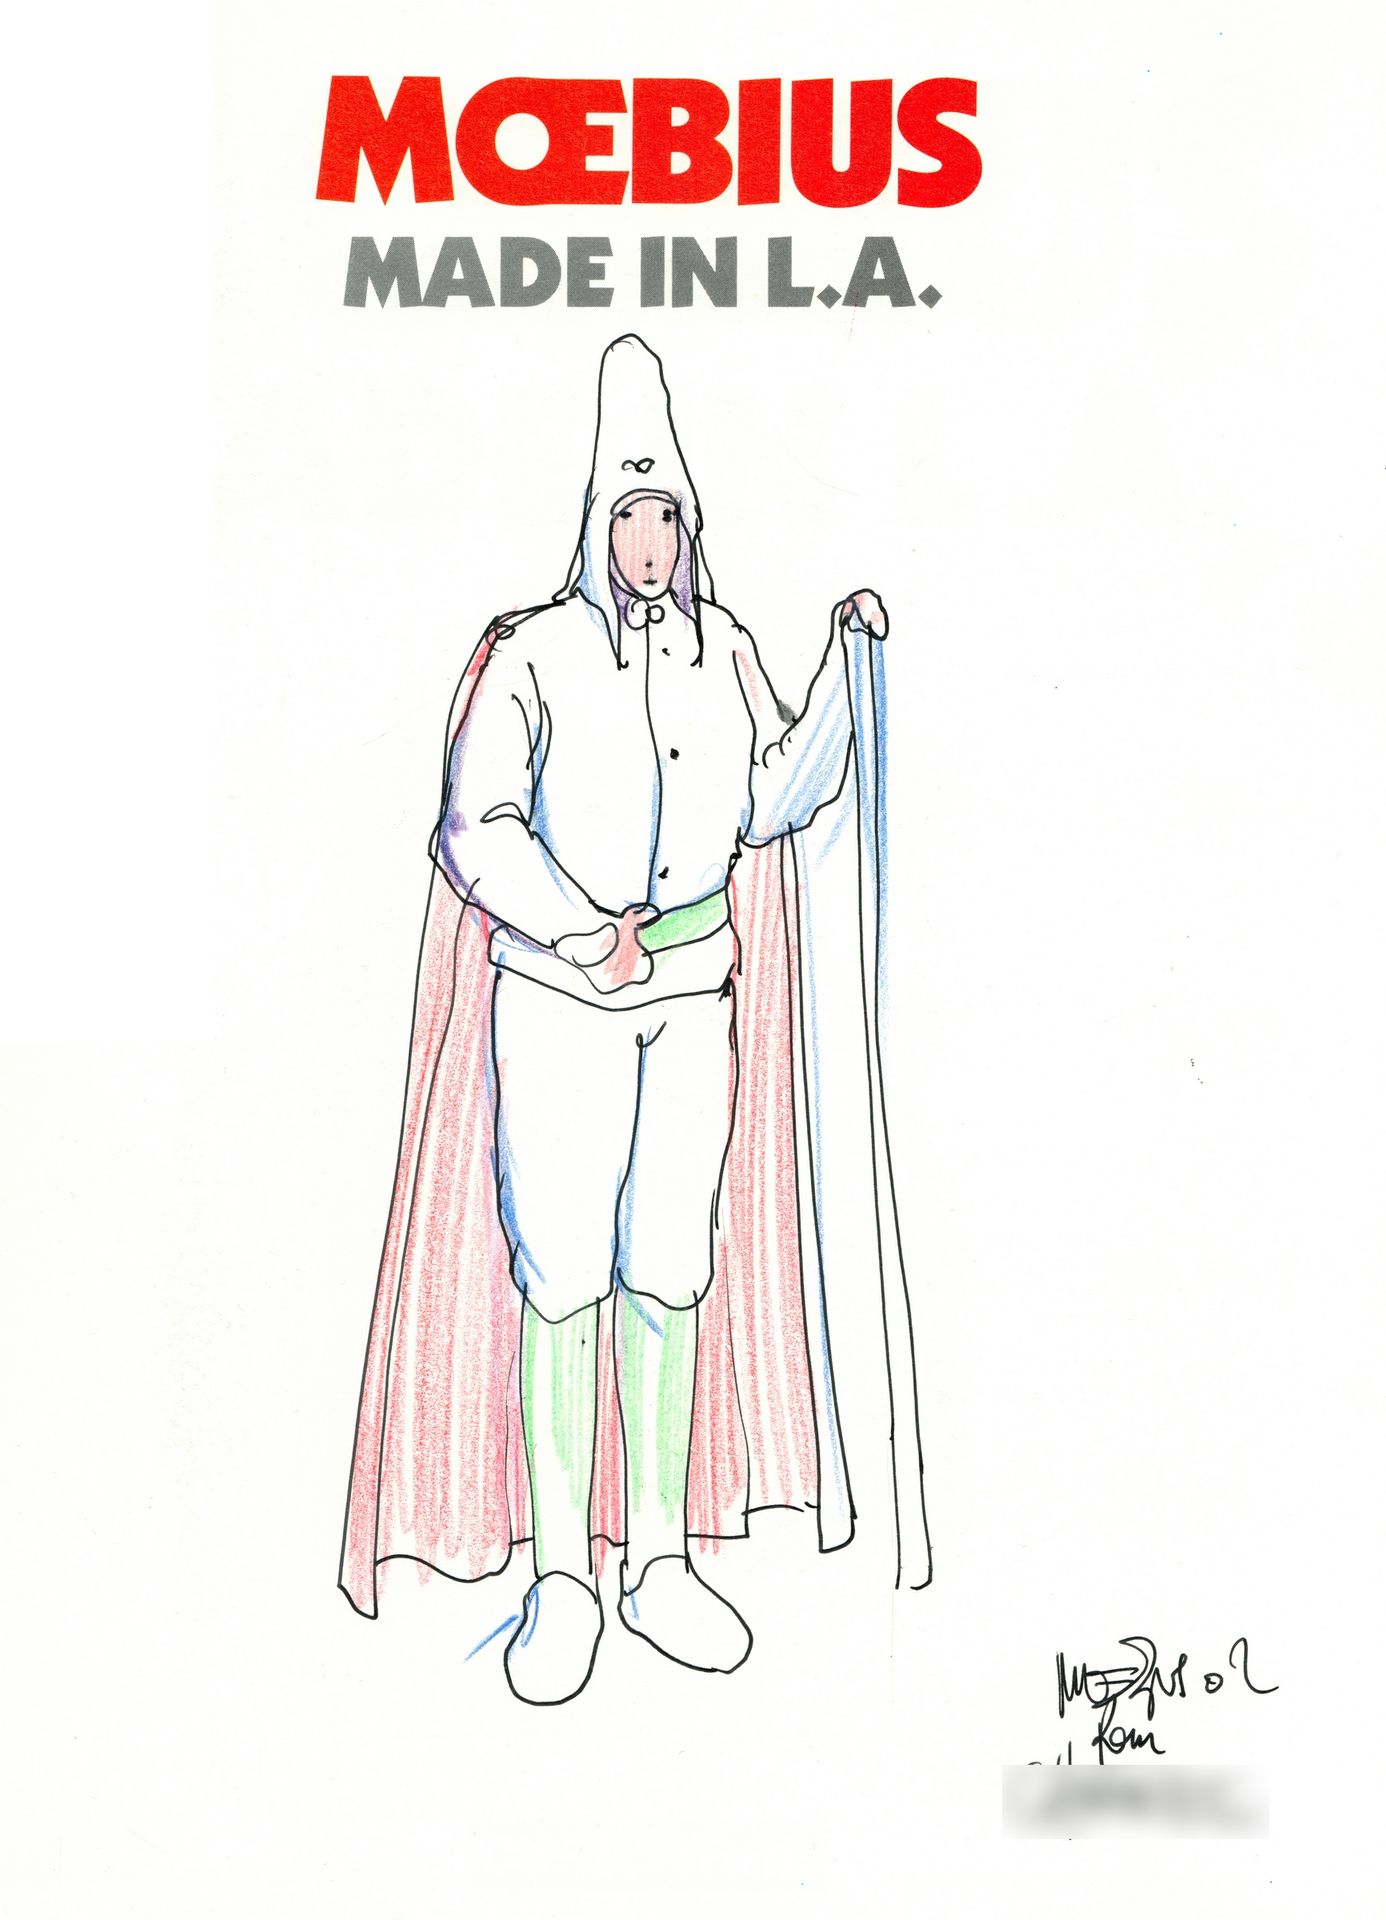 Giraud 莫比乌斯。用印度墨水和彩色铅笔在Eo.Made in L.A.专辑的几乎整个扉页上完成的原创签名绘画。伟大的艺术...素描、插图、短篇小说，摘自作&hellip;